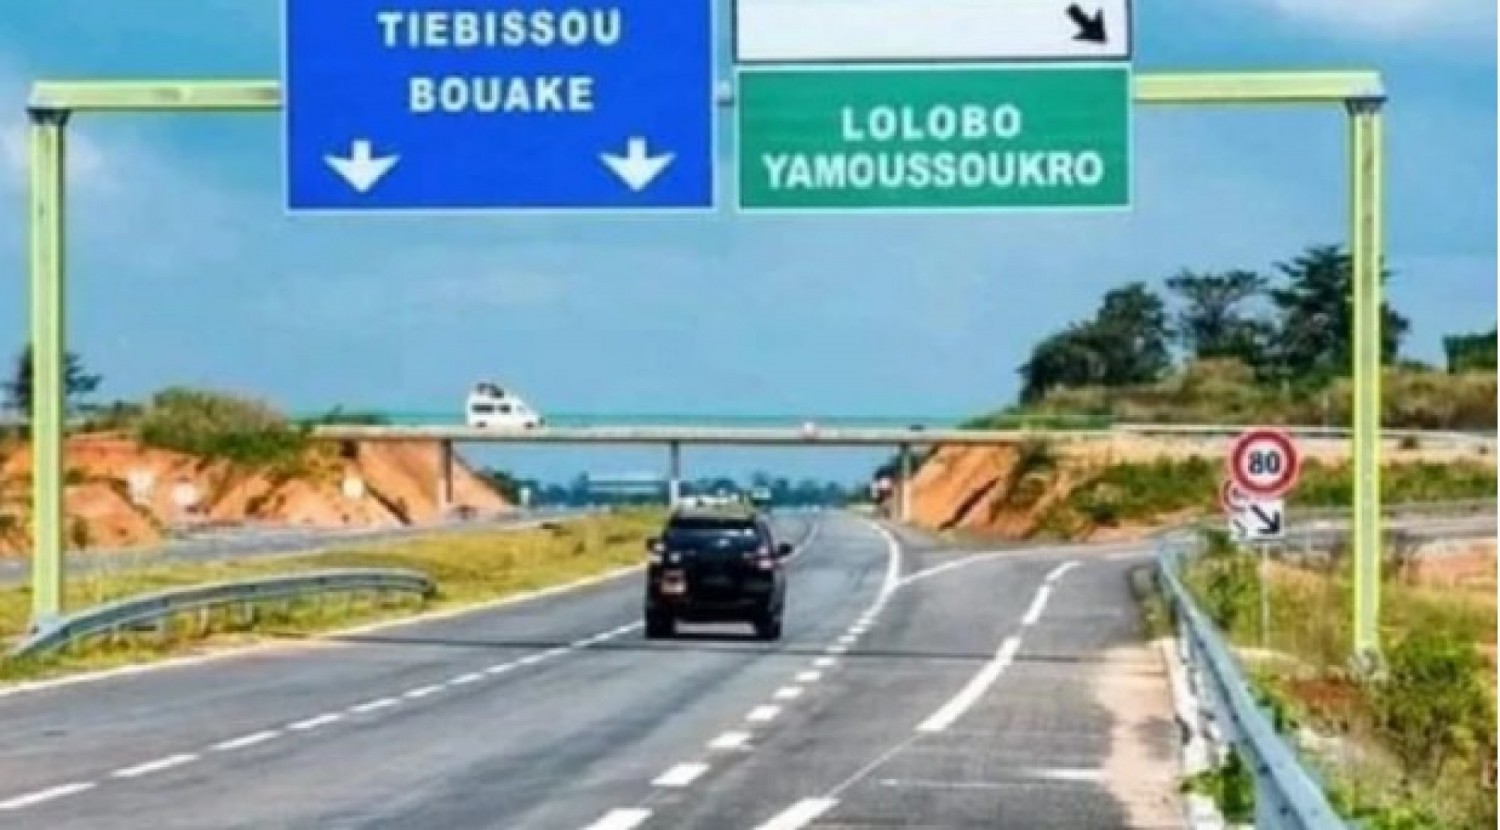 Côte d'Ivoire : Le réseau routier national est passé de 25 000 km à plus de 82 000 km